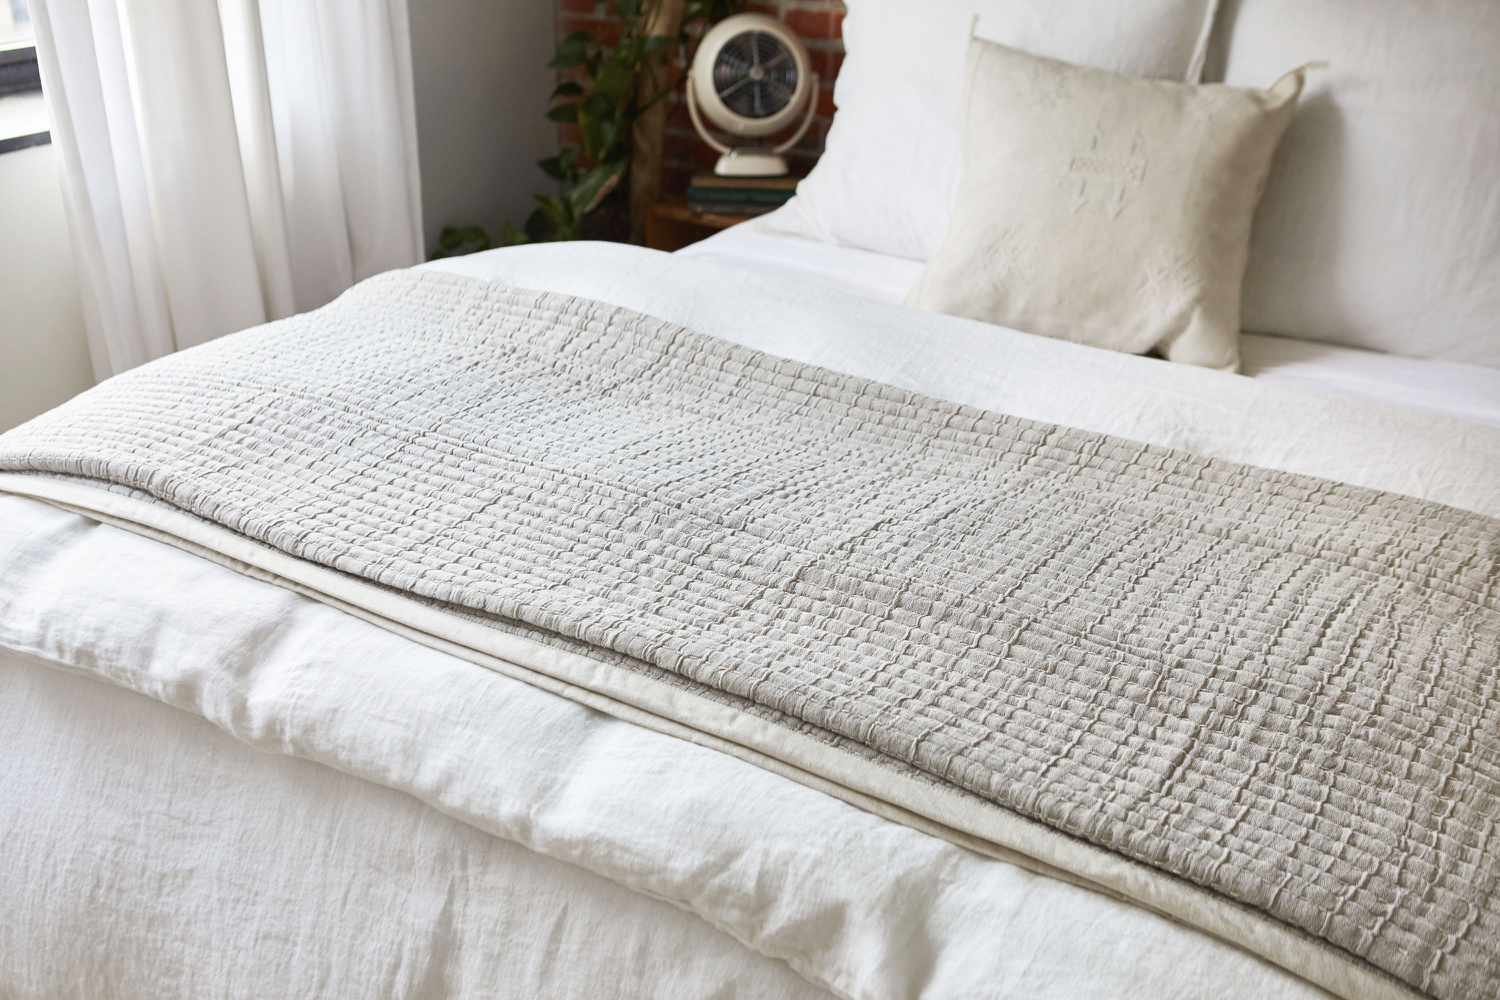 Leichte hellbraune und weiße Decken auf dem Bett gefaltet